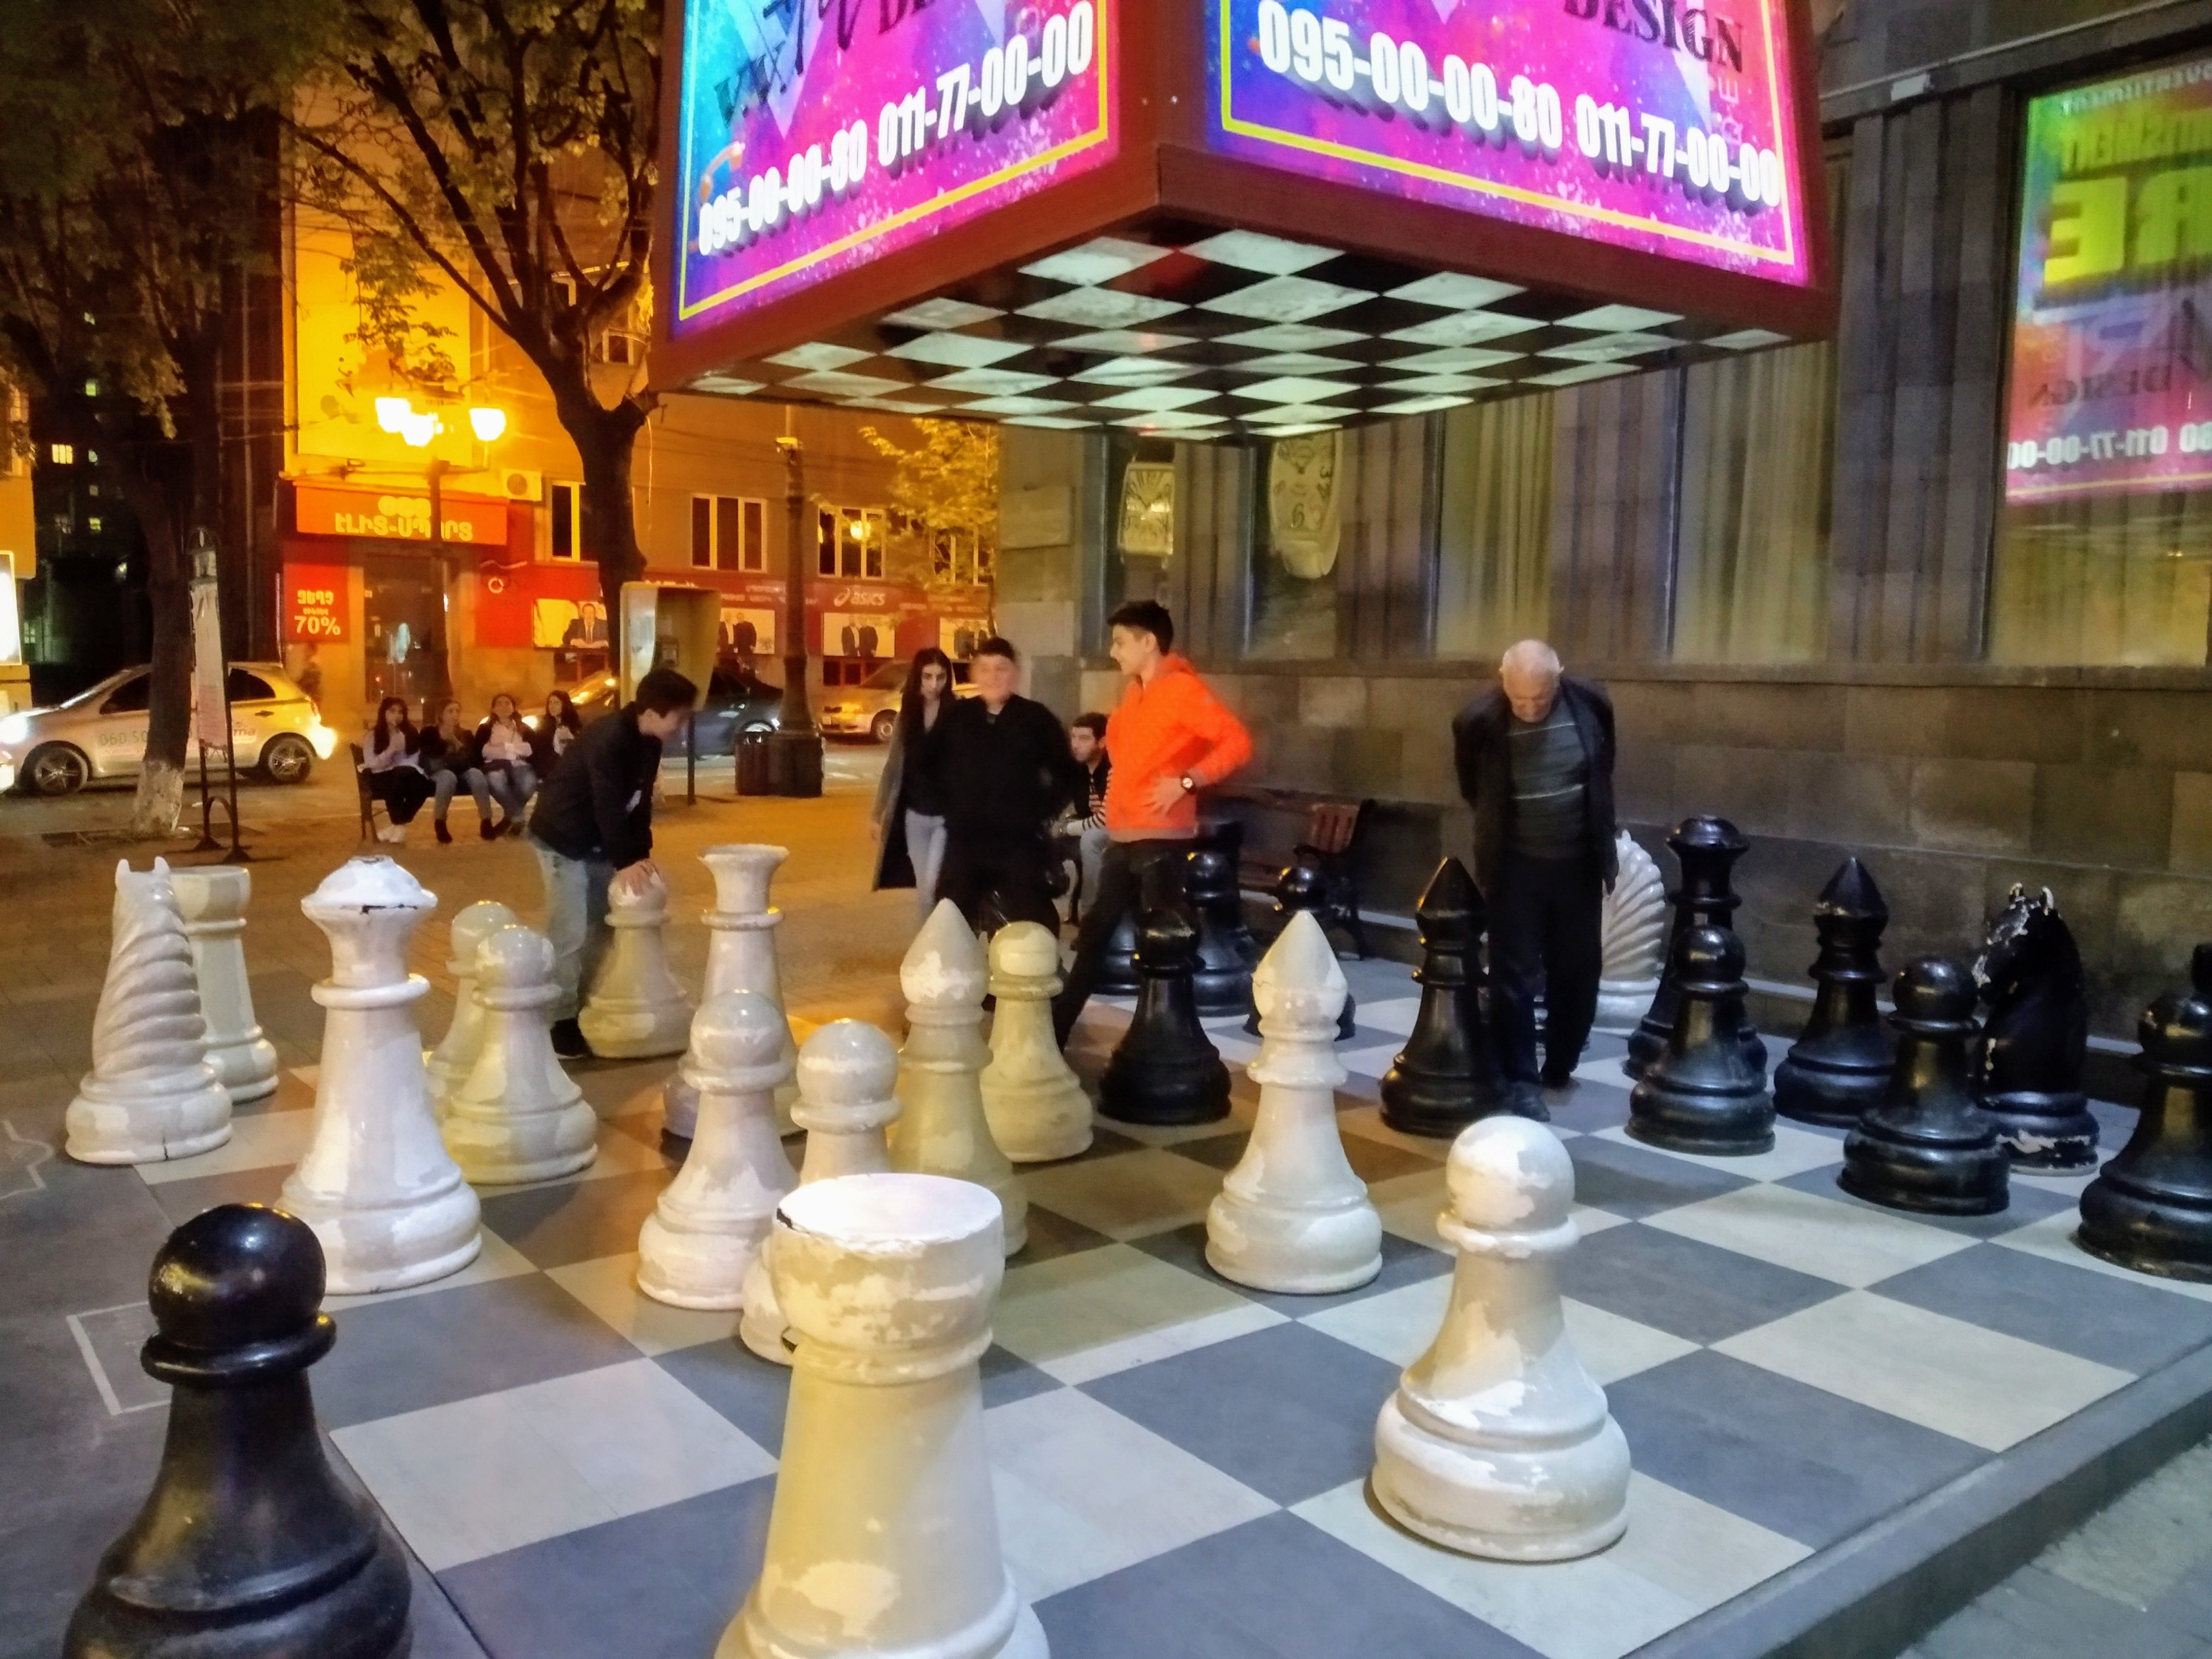 Atomic chess - Wikipedia